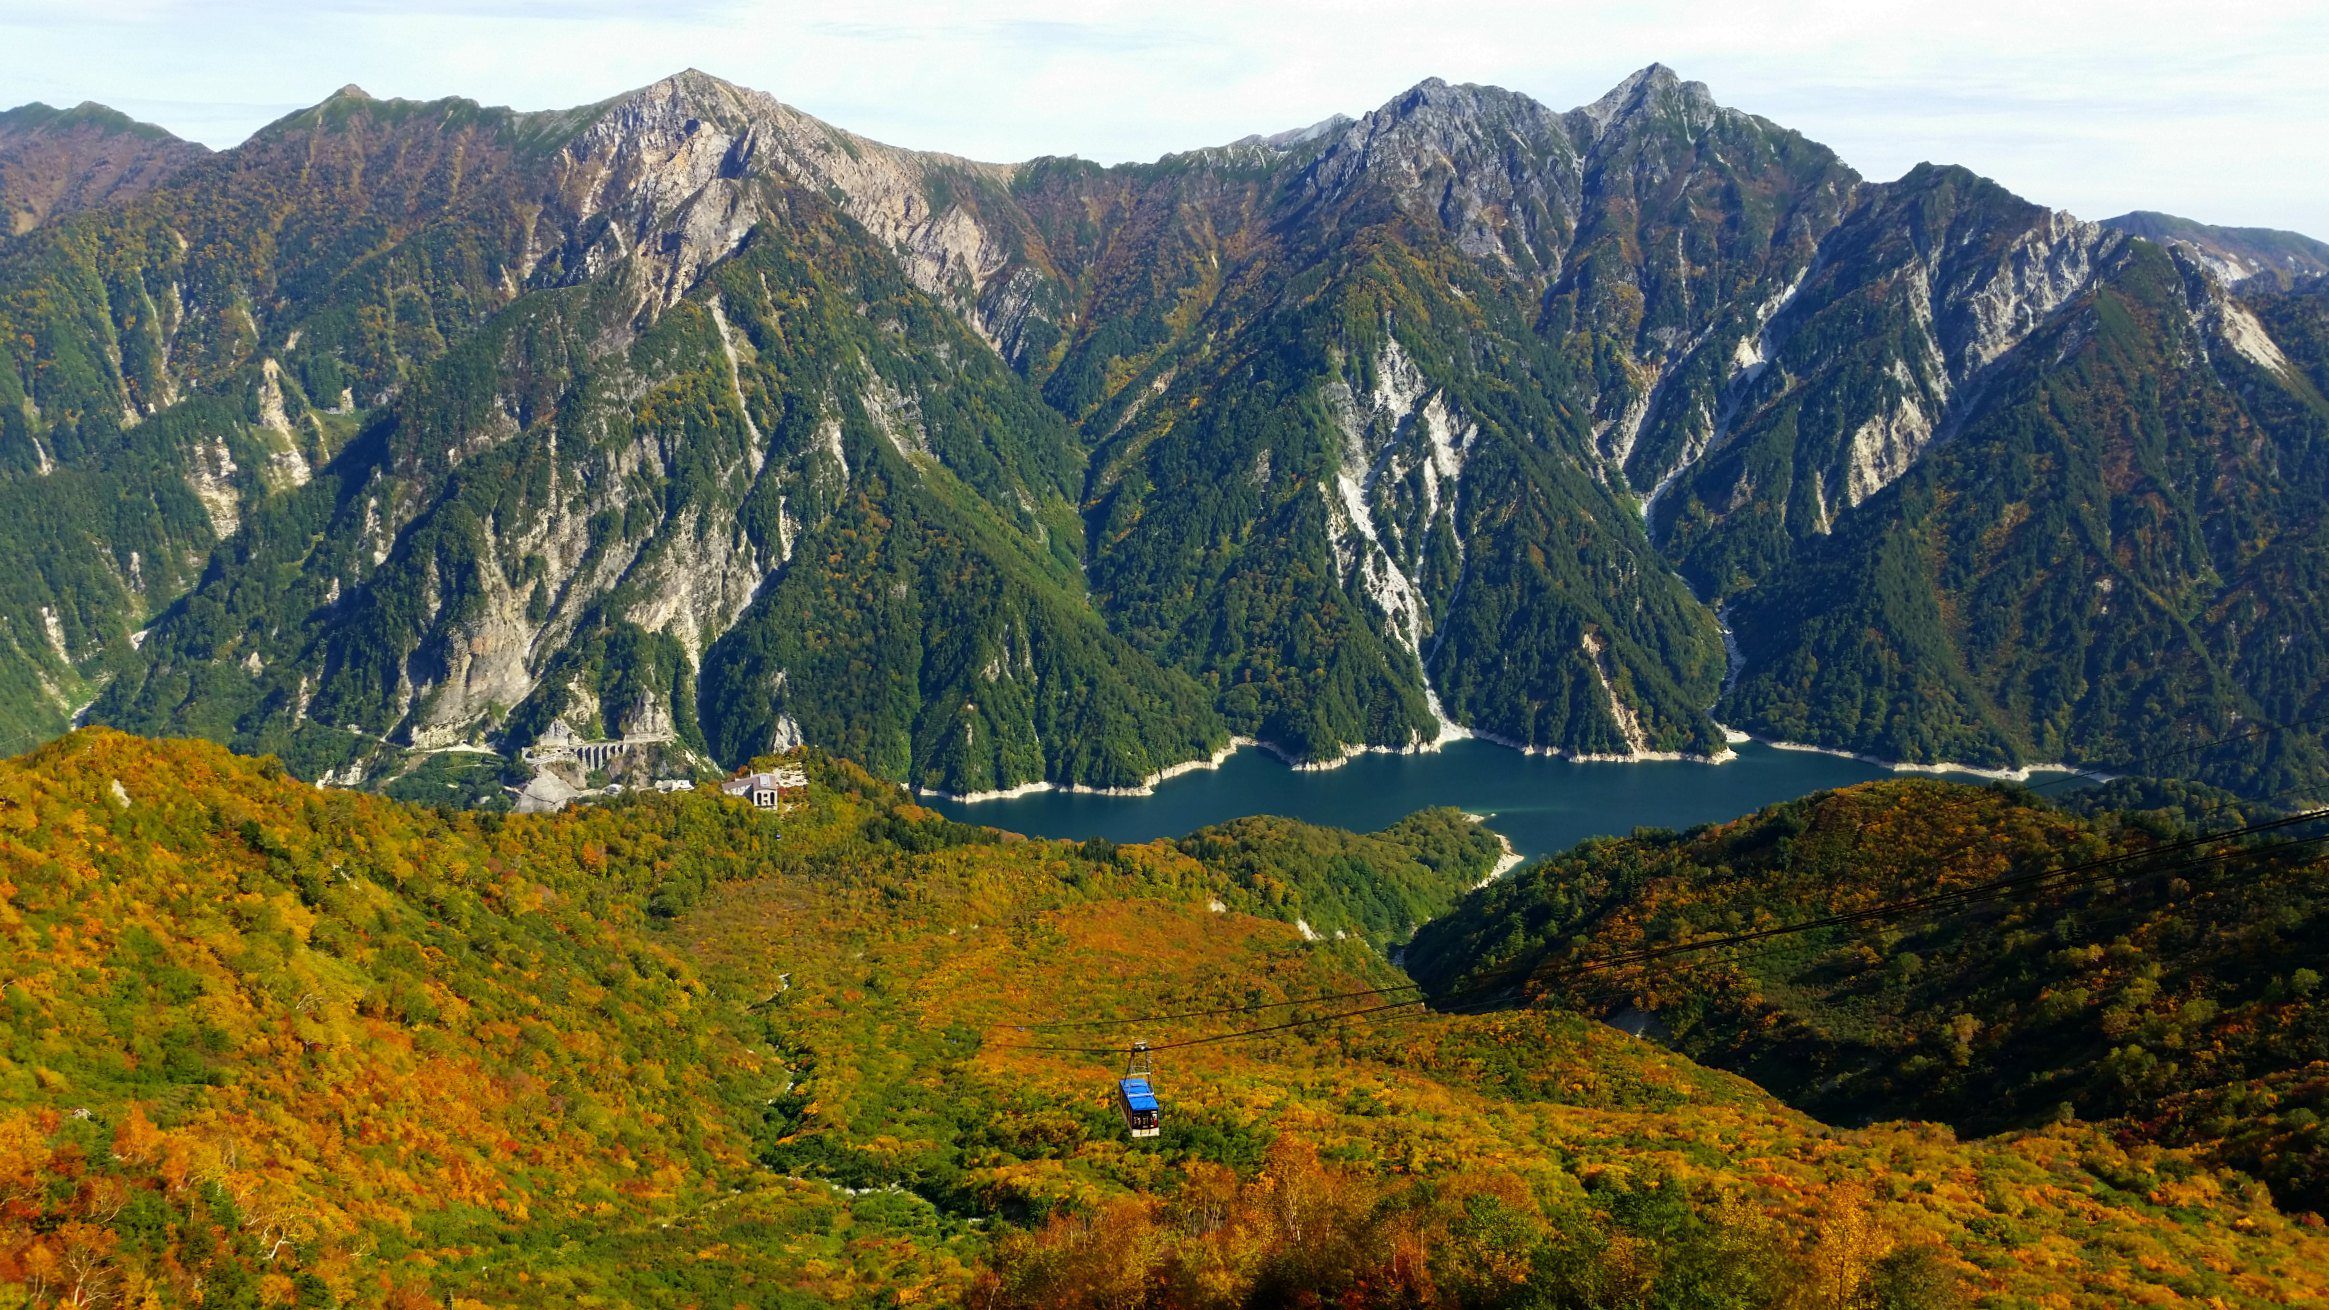 Tateyama Kurobe Alpine Route in Japan